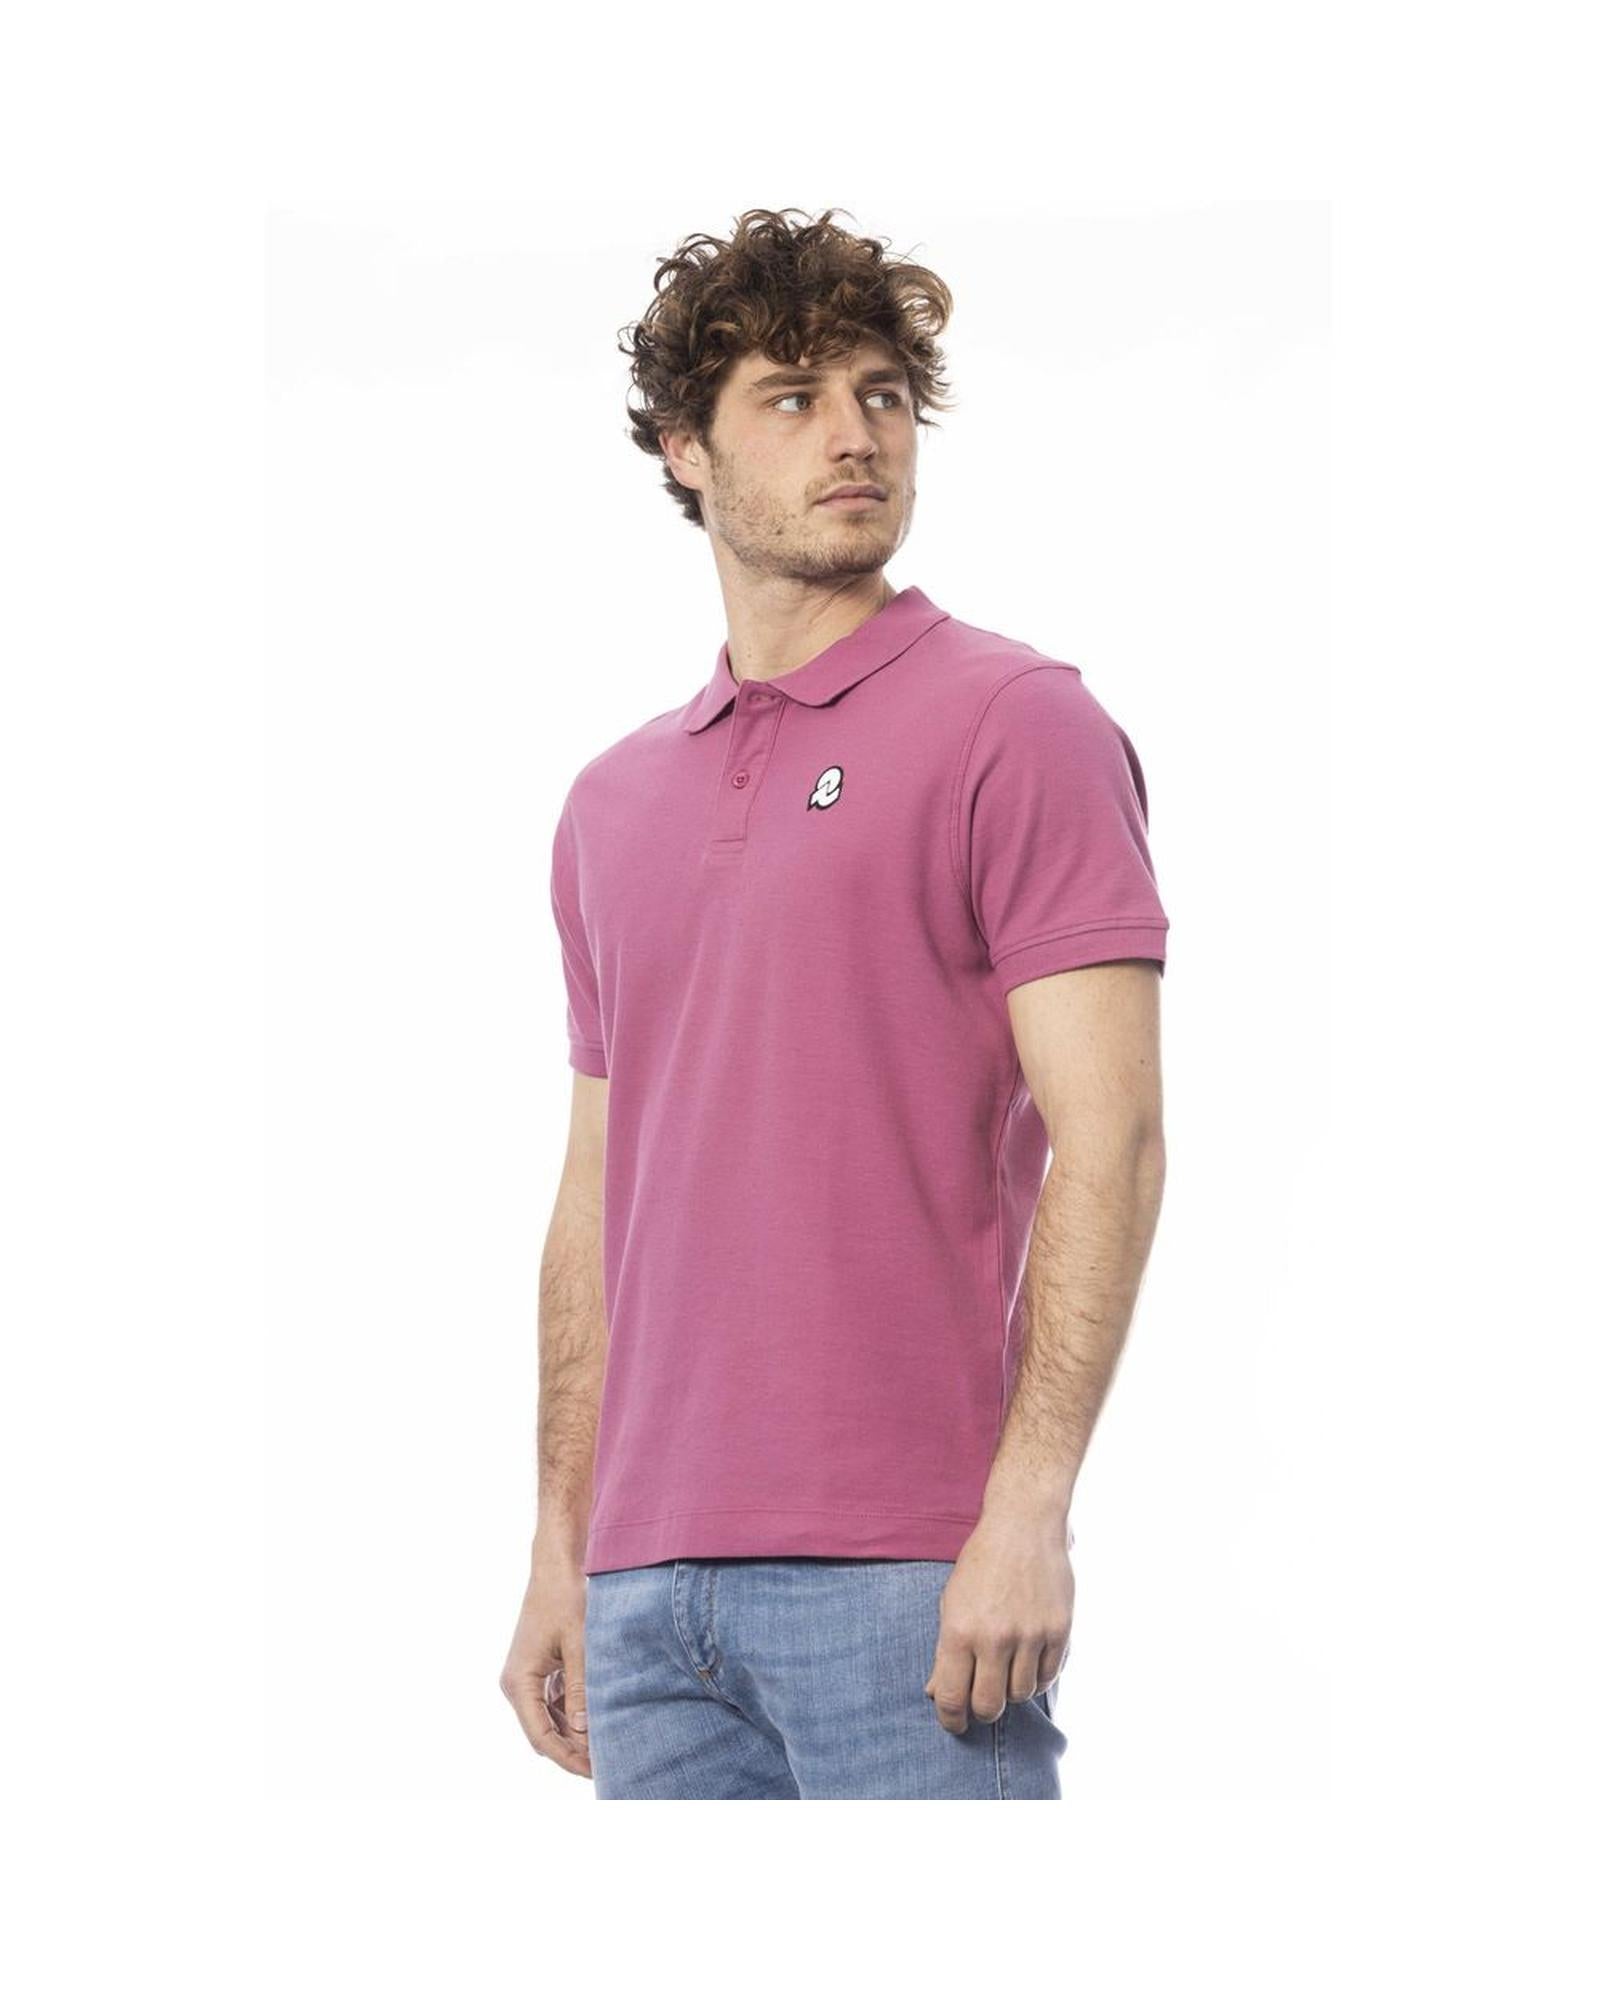 Men's Purple Cotton Polo Shirt - S